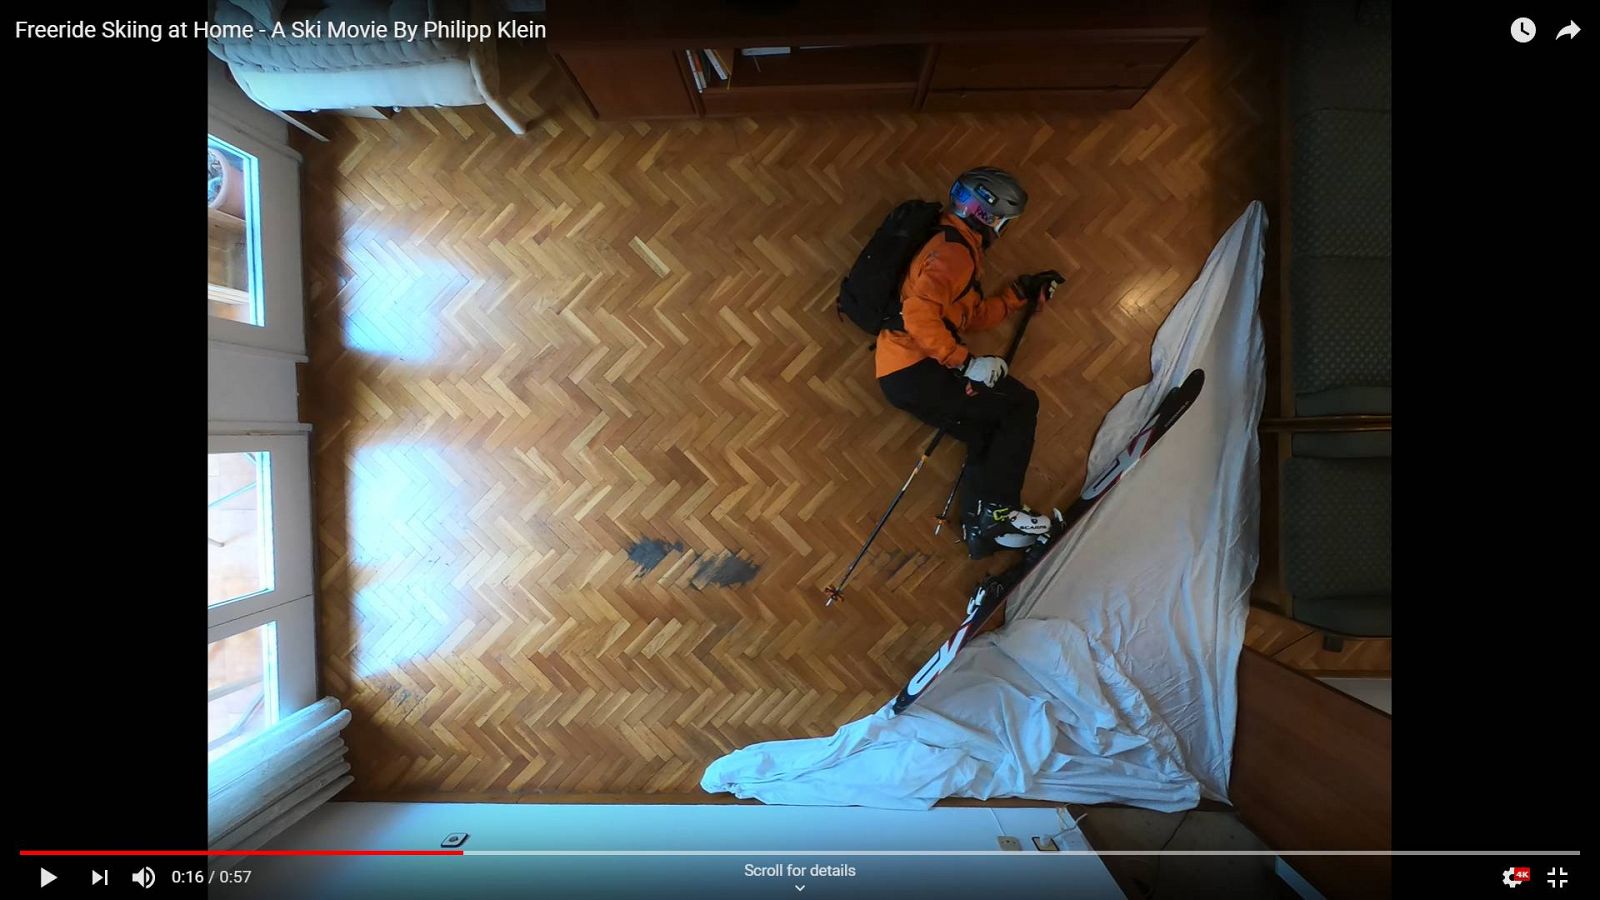 La montaña en el salón: el vídeo viral del esquiador confinado